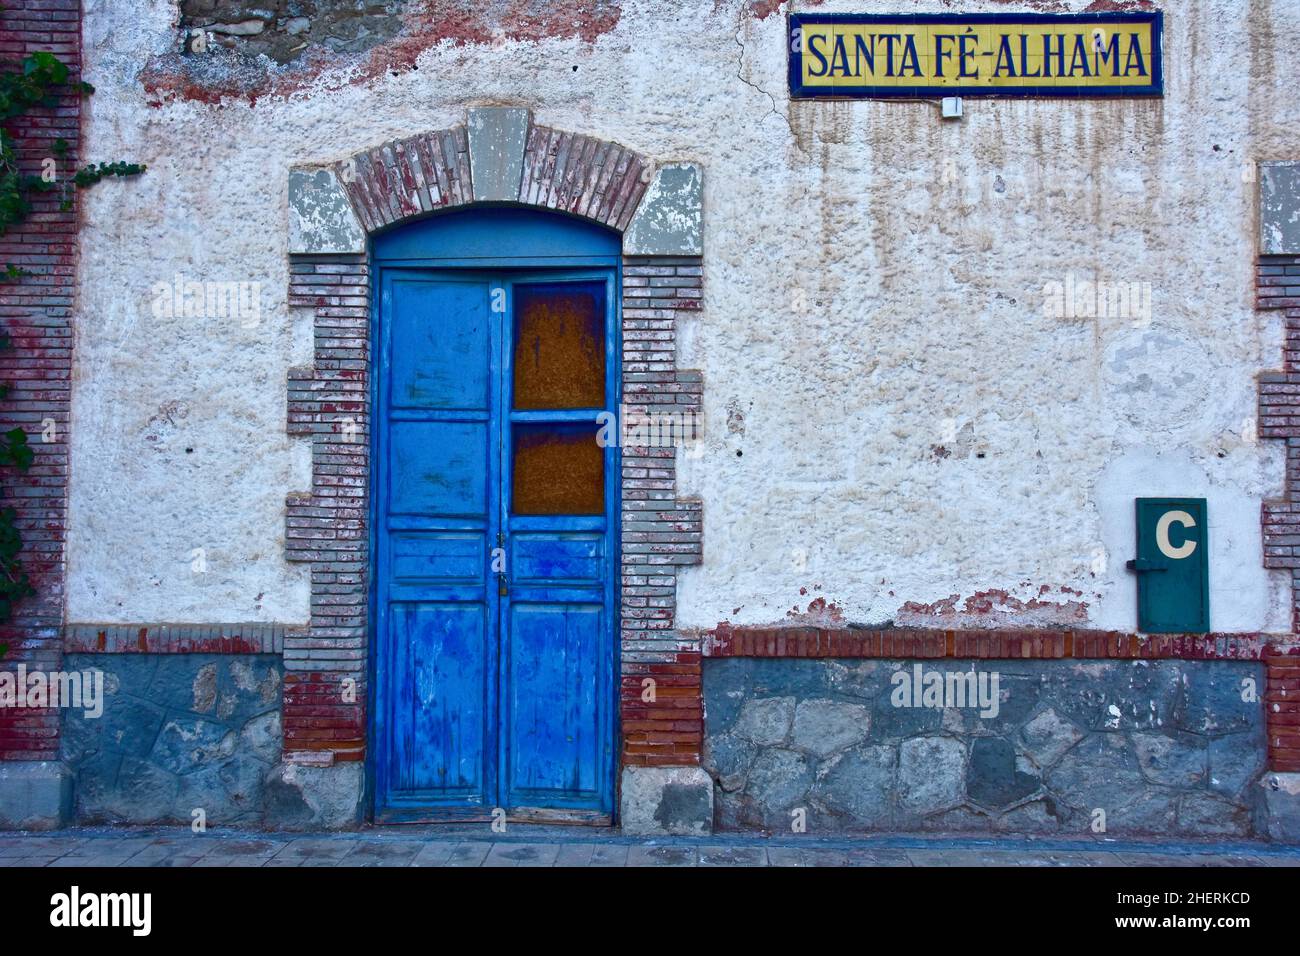 Blaue, von Ziegelsteinen umrahmte Tür am geschlossenen Bahnhof, Santa Fe-Alhama, Andalusien, Spanien Stockfoto